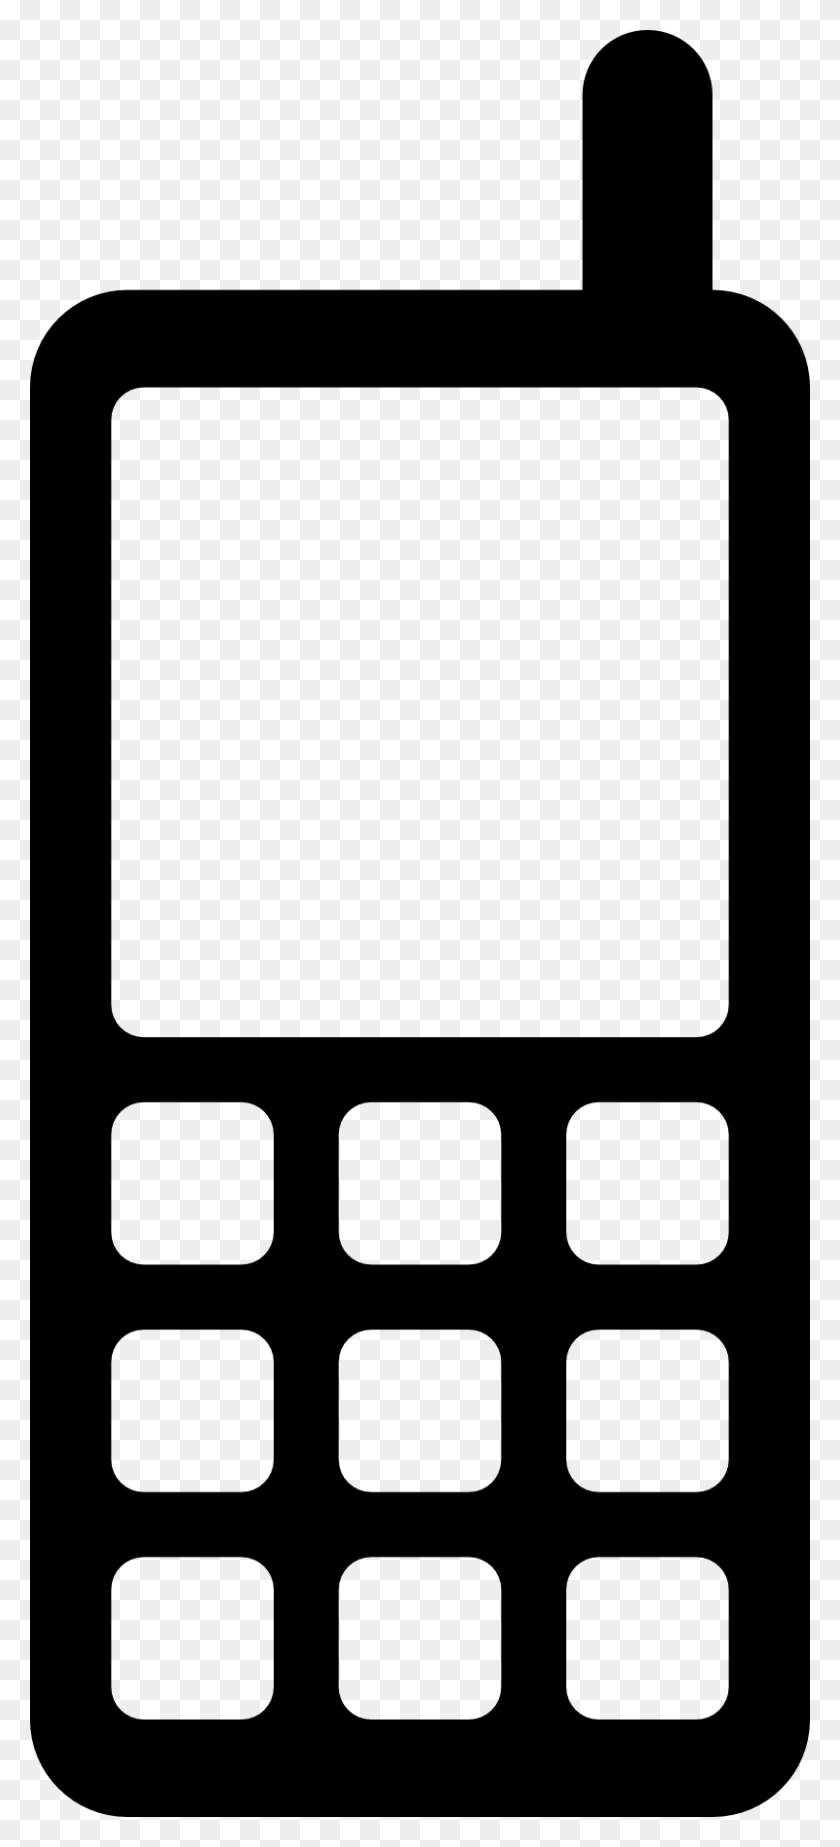 800x1833 Скачать Значок Мобильного Клипарт Компьютерные Иконки Картинки Для Iphone - Клипарт Для Iphone